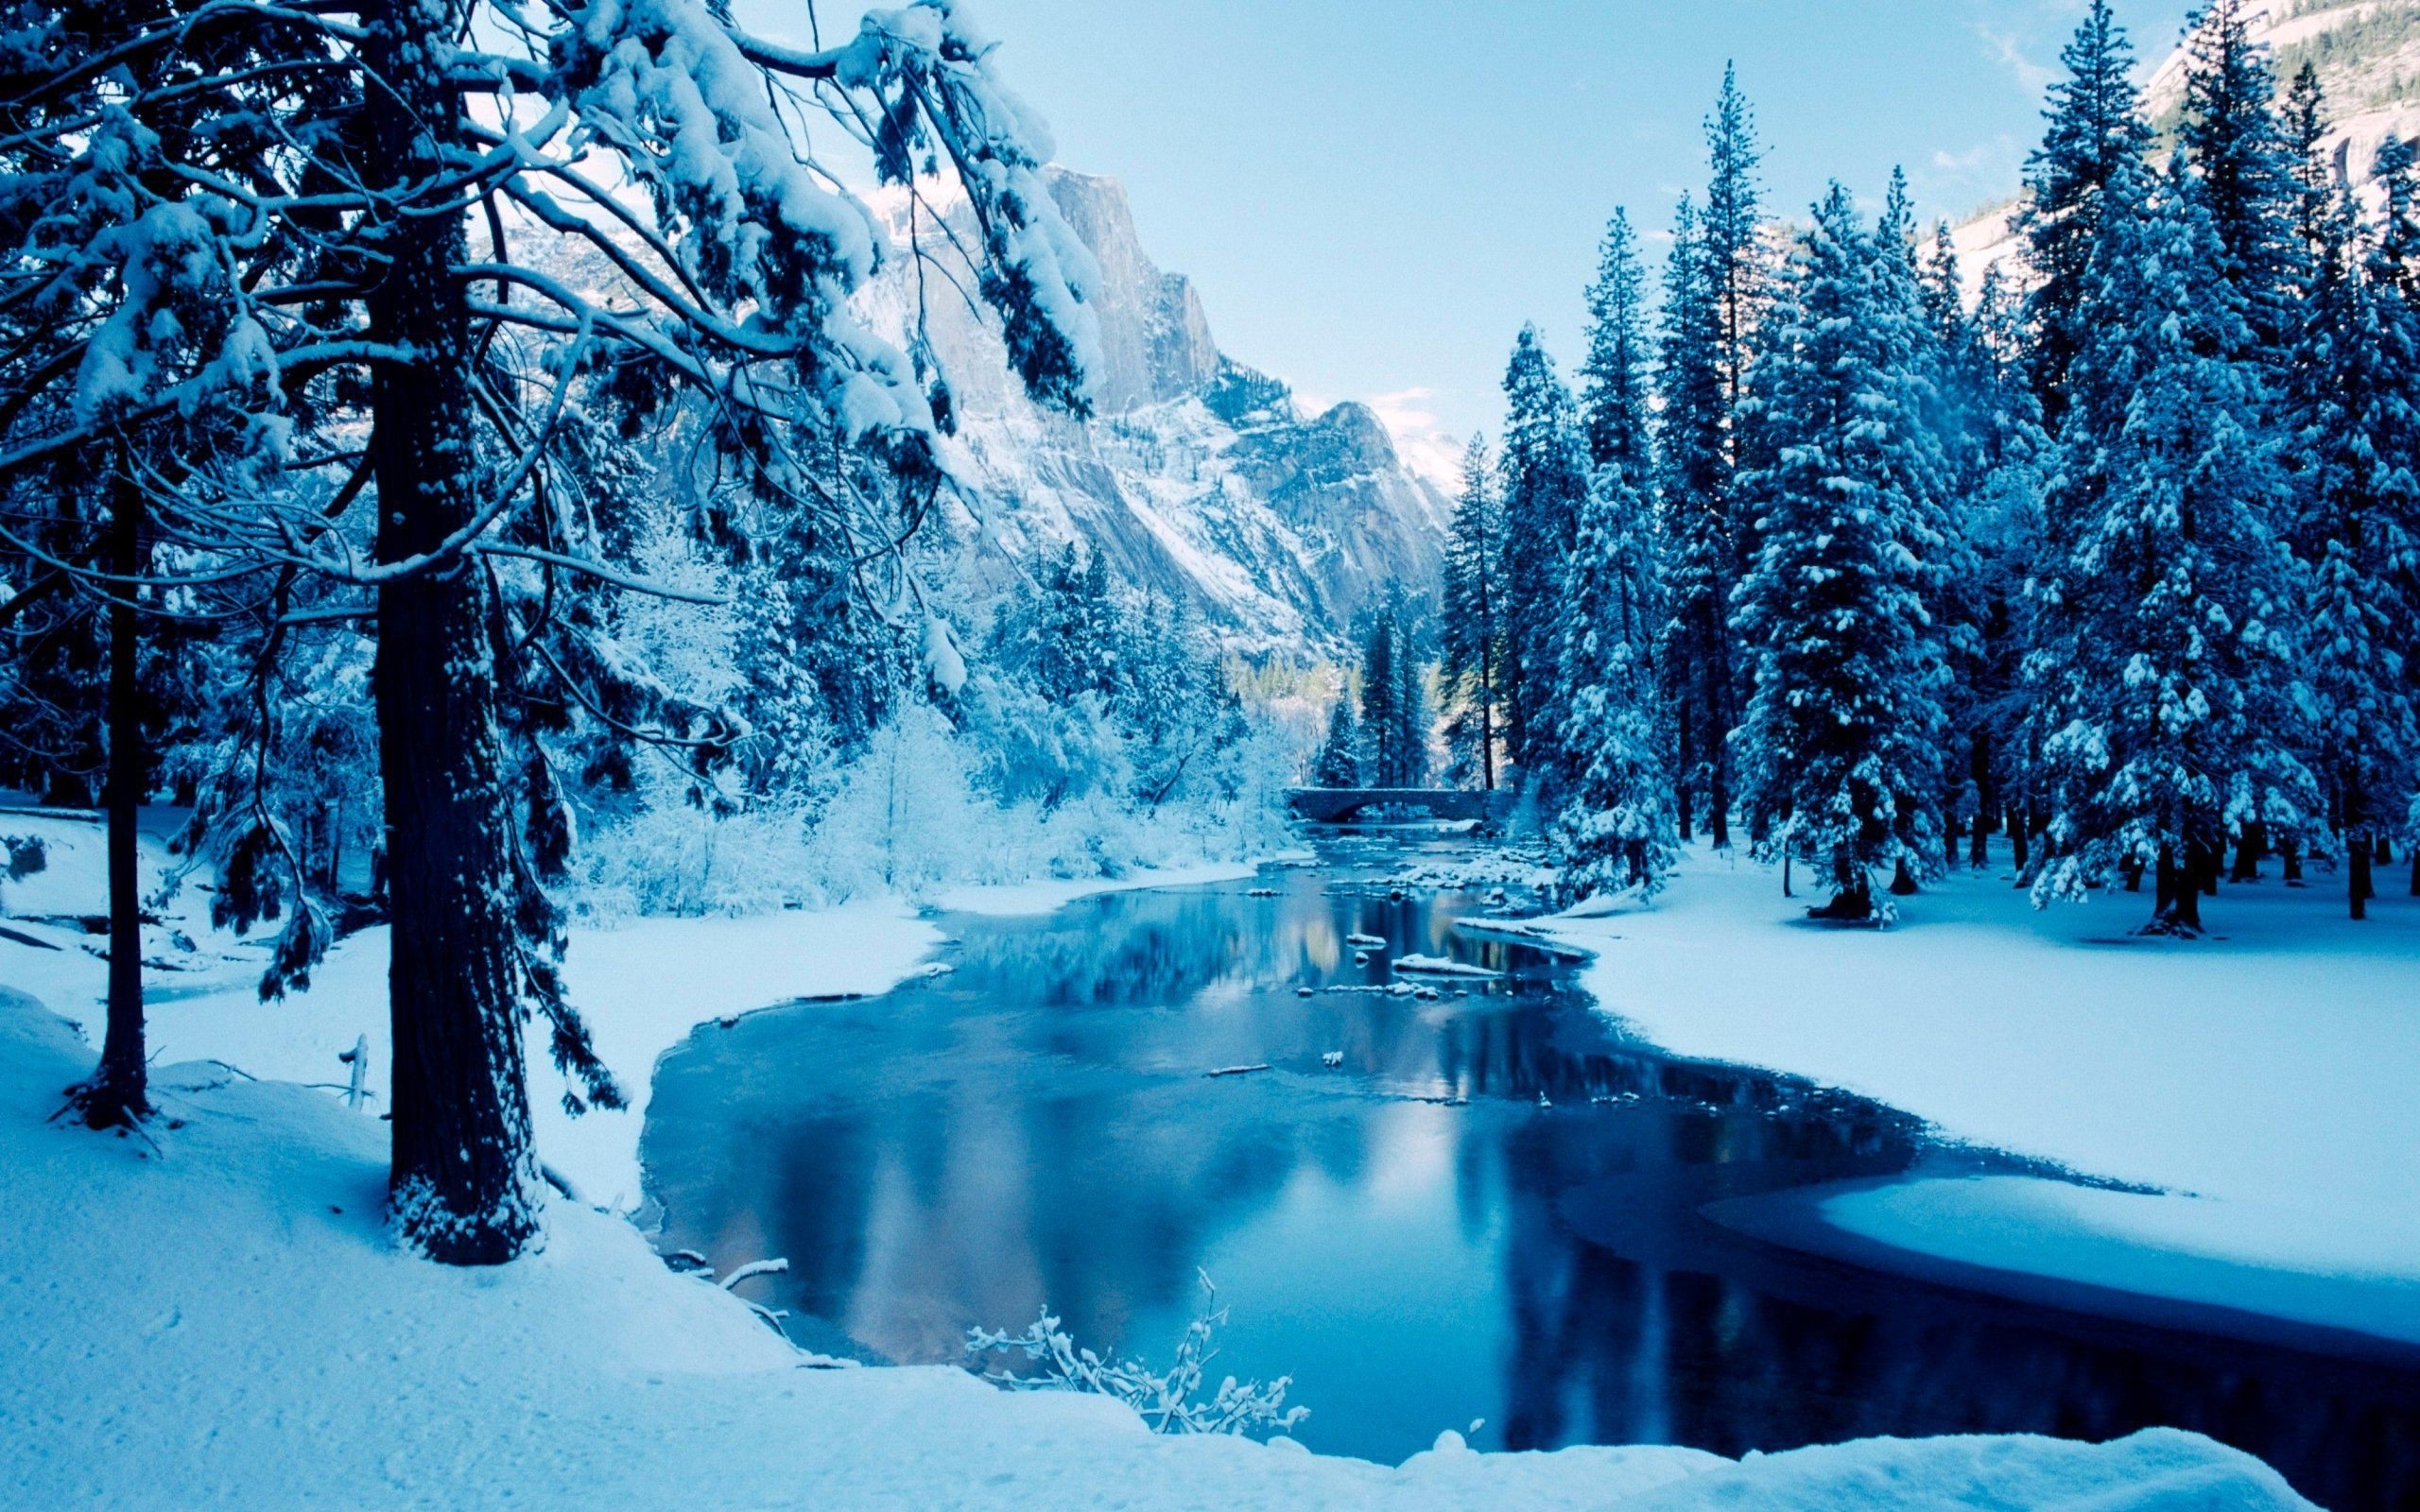 2560x1600 Title : beautiful winter scenes desktop wallpaper | wallpapers | pinterest.  Dimension : 2560 x 1600. File Type : JPG/JPEG